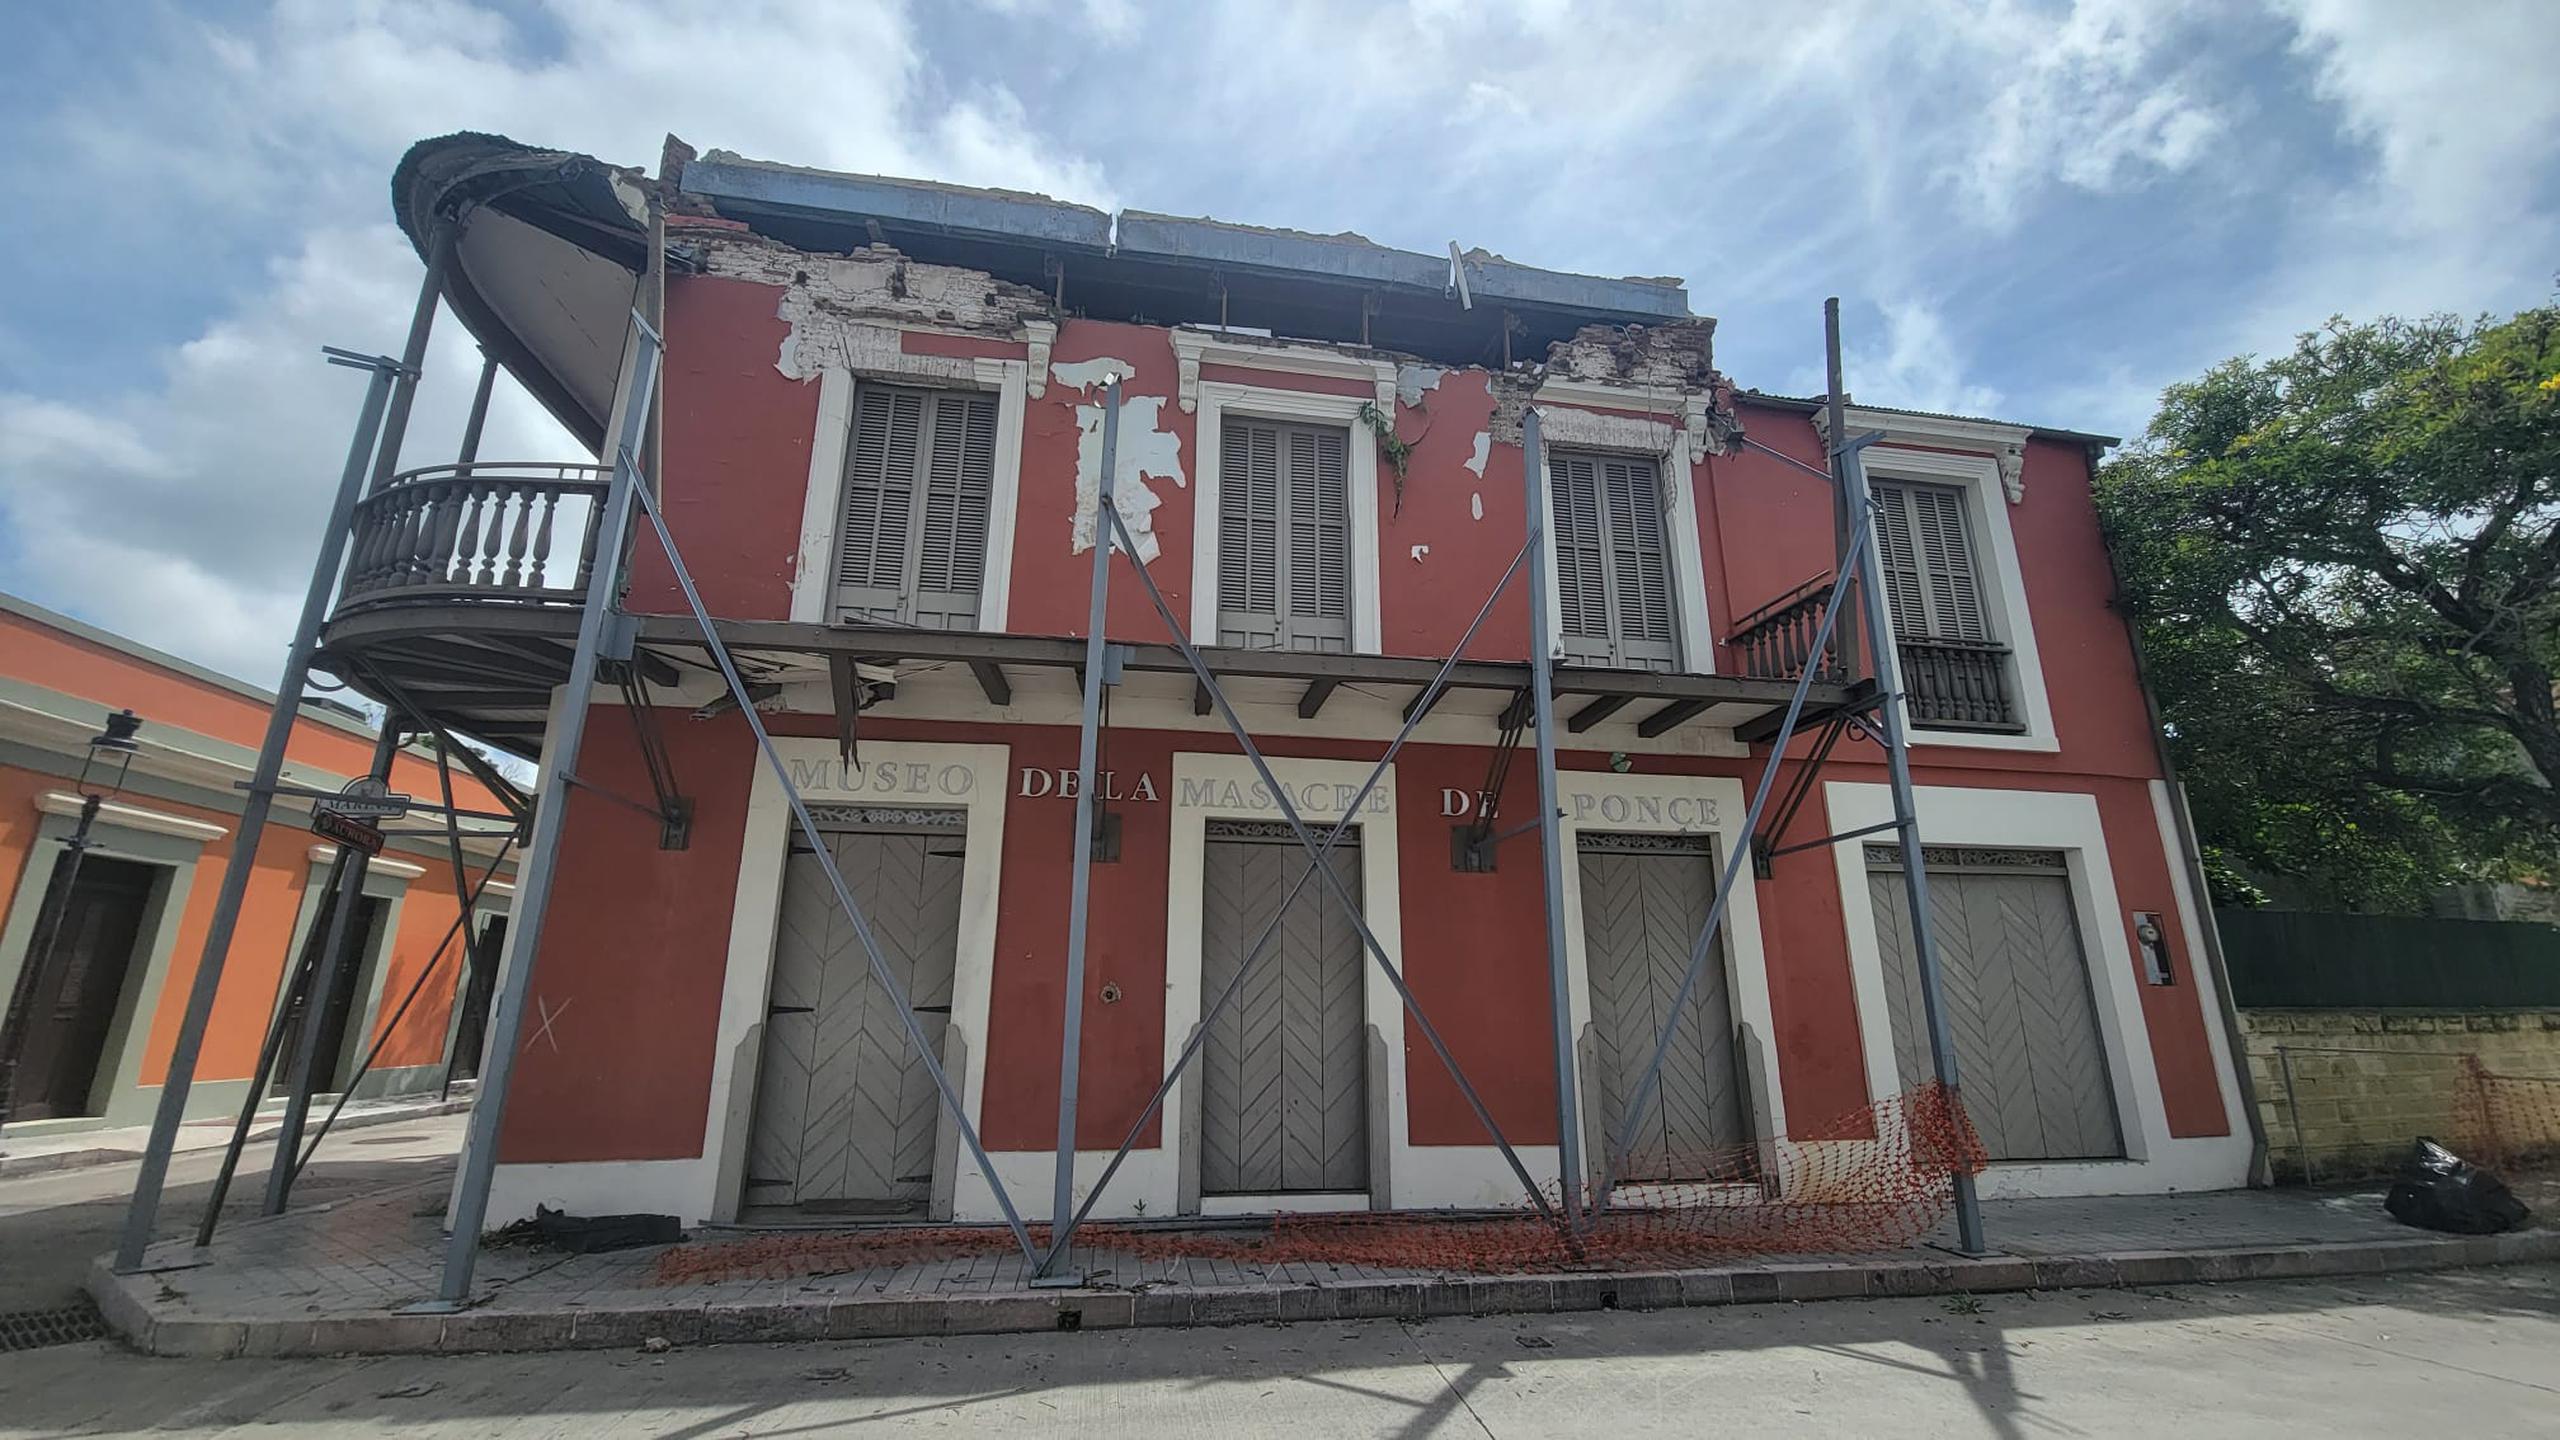 Otro de los edificios en potencial peligro de colapso es el Museo de la Masacre, ubicado entre las calles Marina y Aurora.